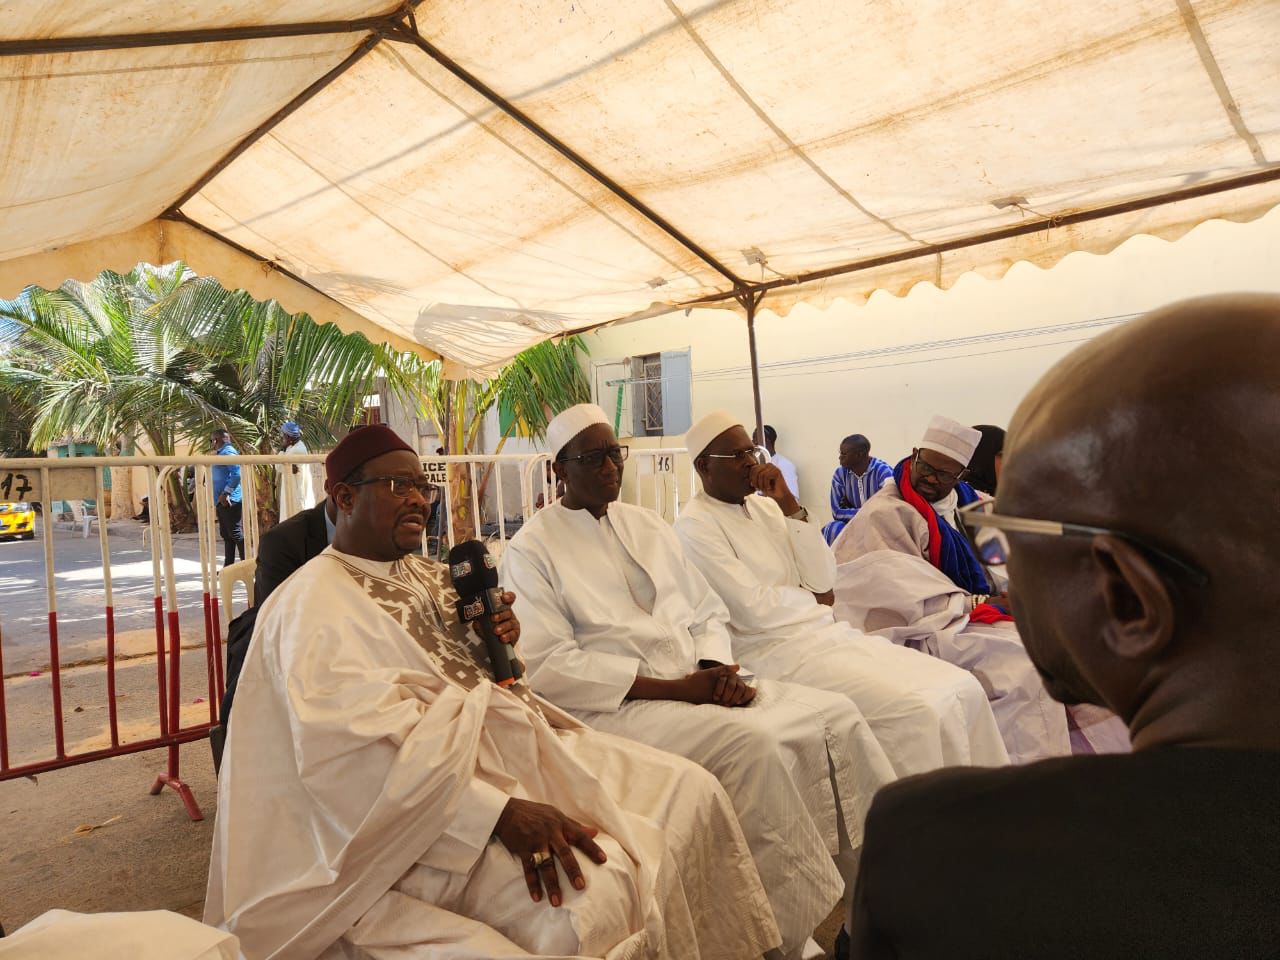 Le Premier ministre Amadou Bâ a effectué hier, vendredi, une série de visites de condoléances à Dakar